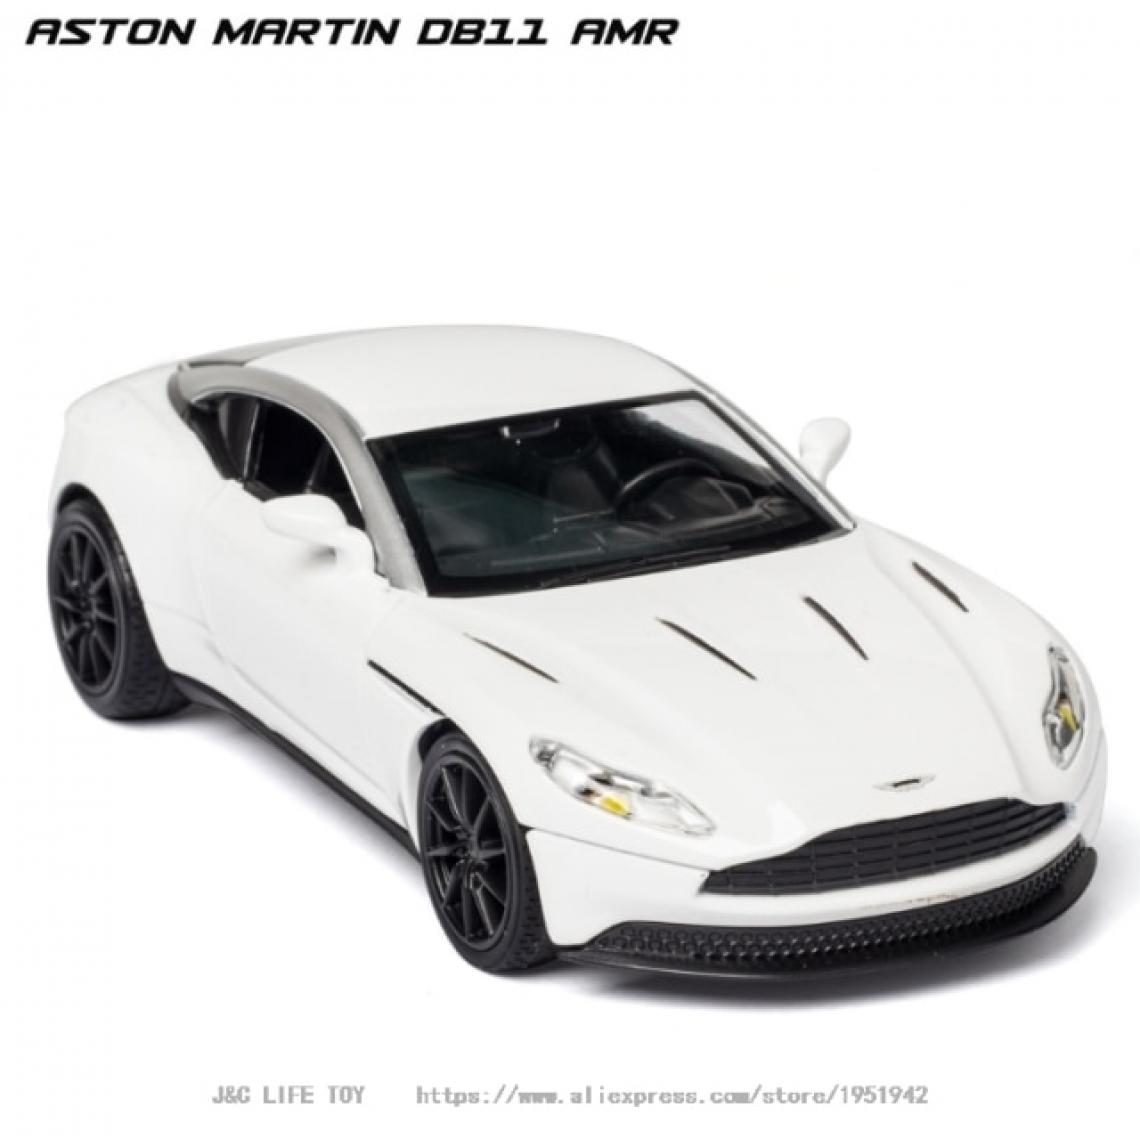 Universal - 1: 32 Aston Martin DB11 AMR Voiture jouet moulée sous pression Modèle de voiture jouet en métal Simulation haute Retraite Collection de jouets pour enfants(blanche) - Voitures